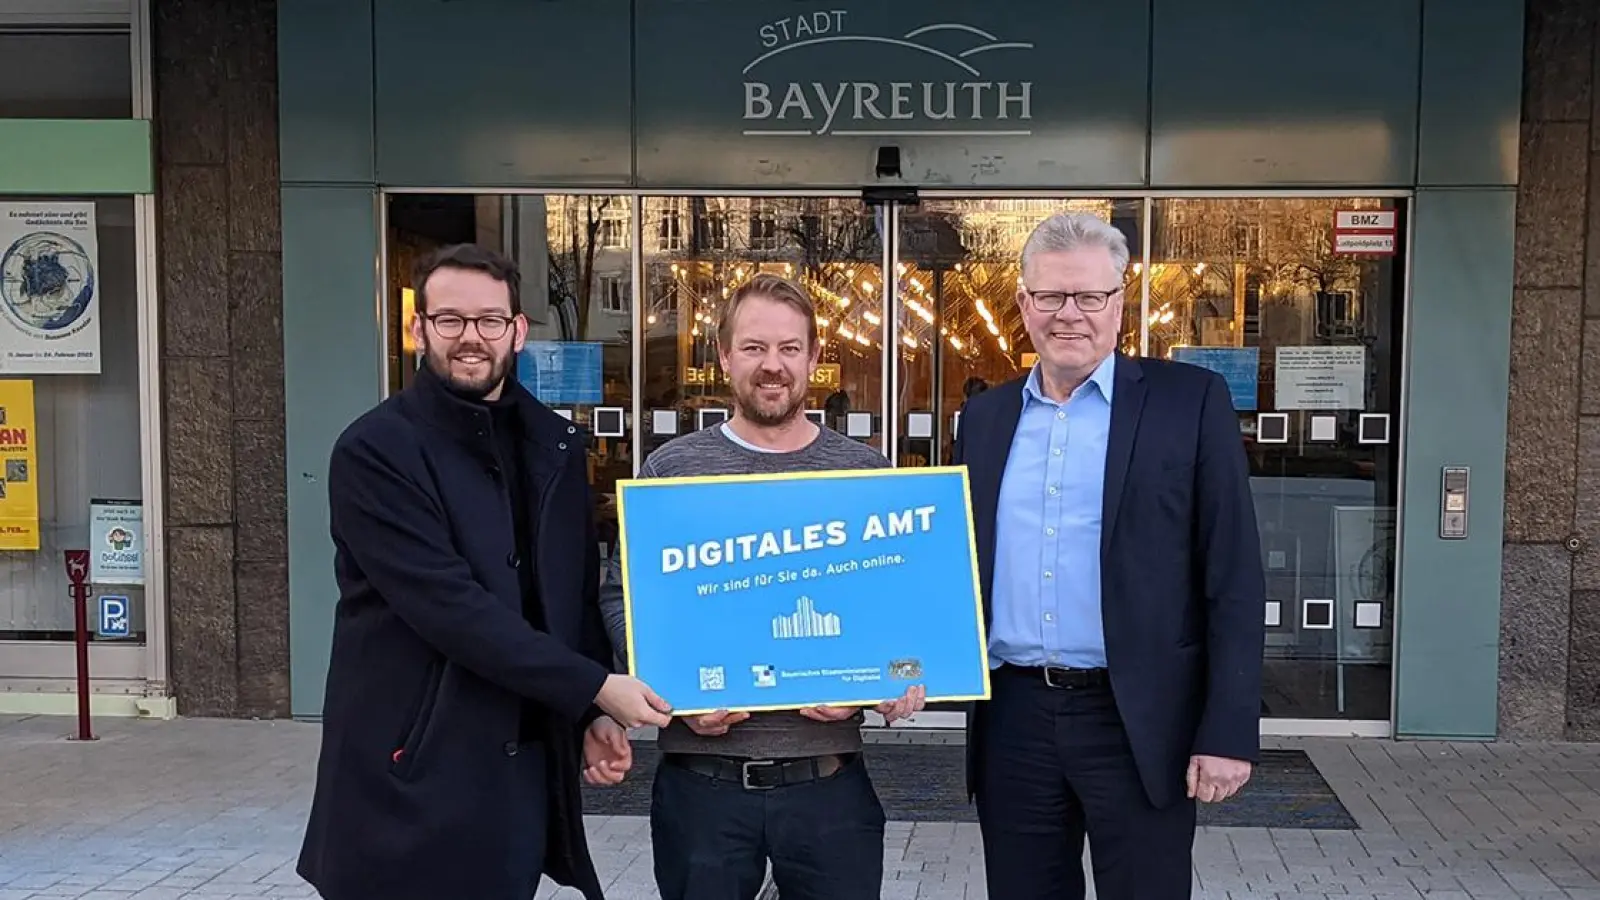 Bayreuth ist „Digitales Amt“: Andreas Zippel, Matthias Kollenda und Thomas Ebersberger präsentieren die Auszeichnung vor dem Neuen Rathaus. (Foto: Stadt Bayreuth)